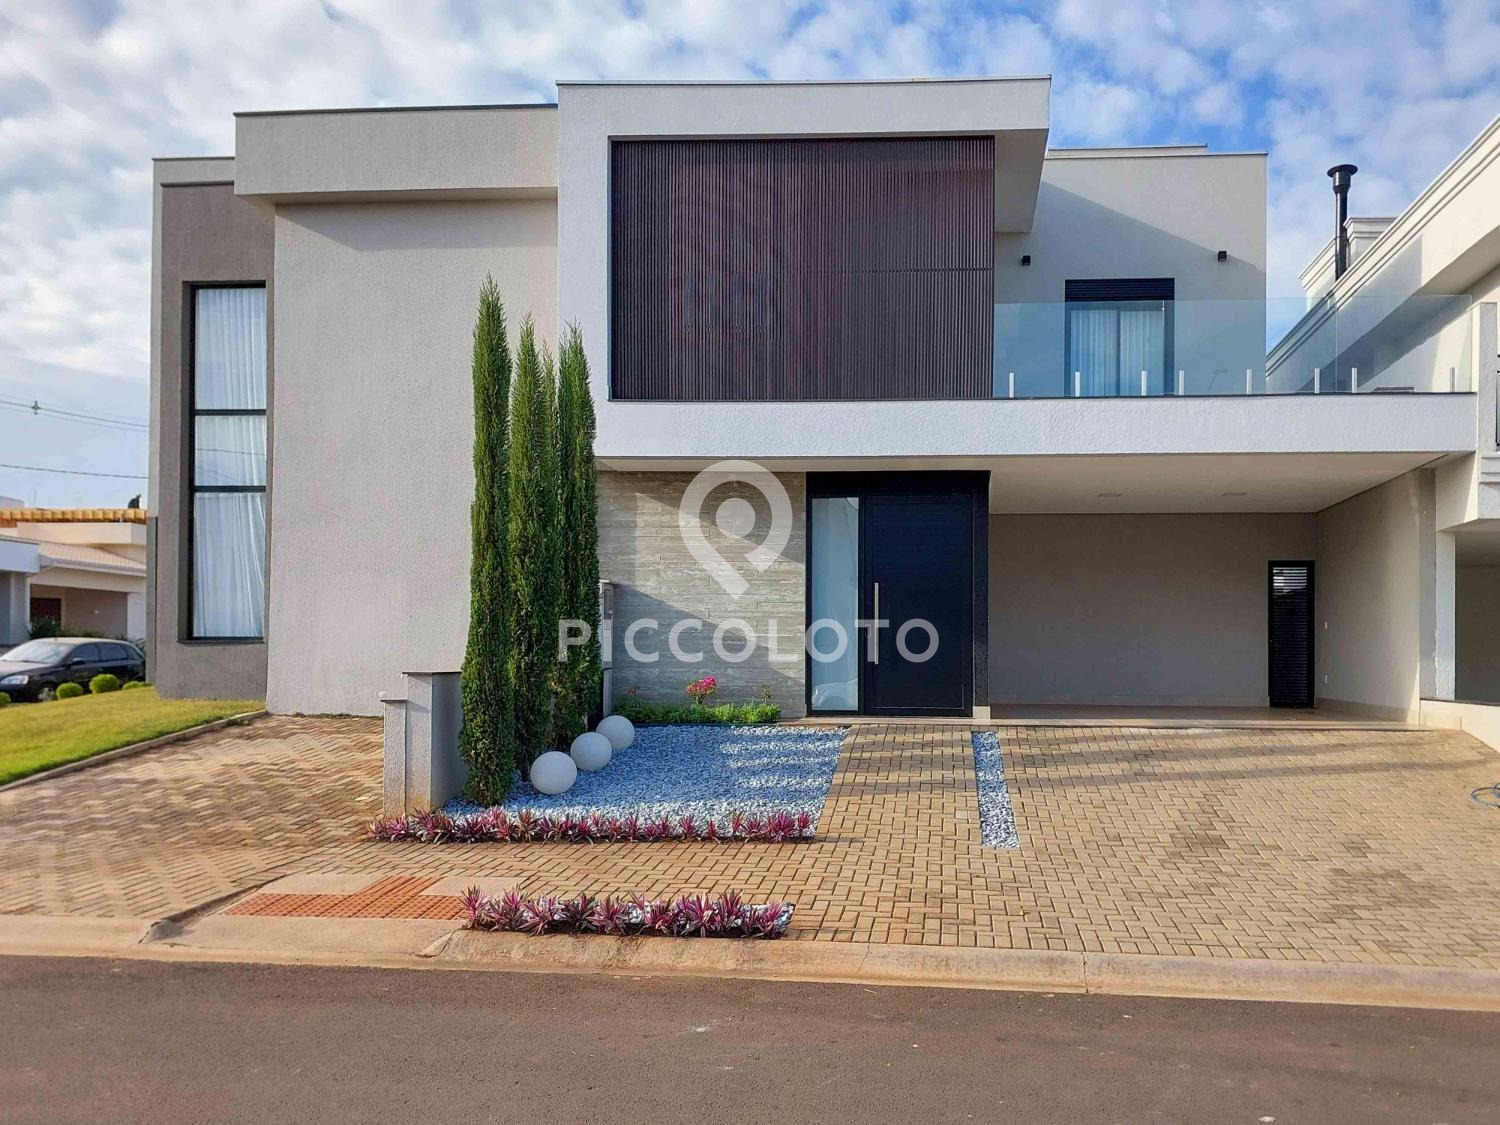 Piccoloto - Casa à venda no Parque Brasil 500 em Paulínia